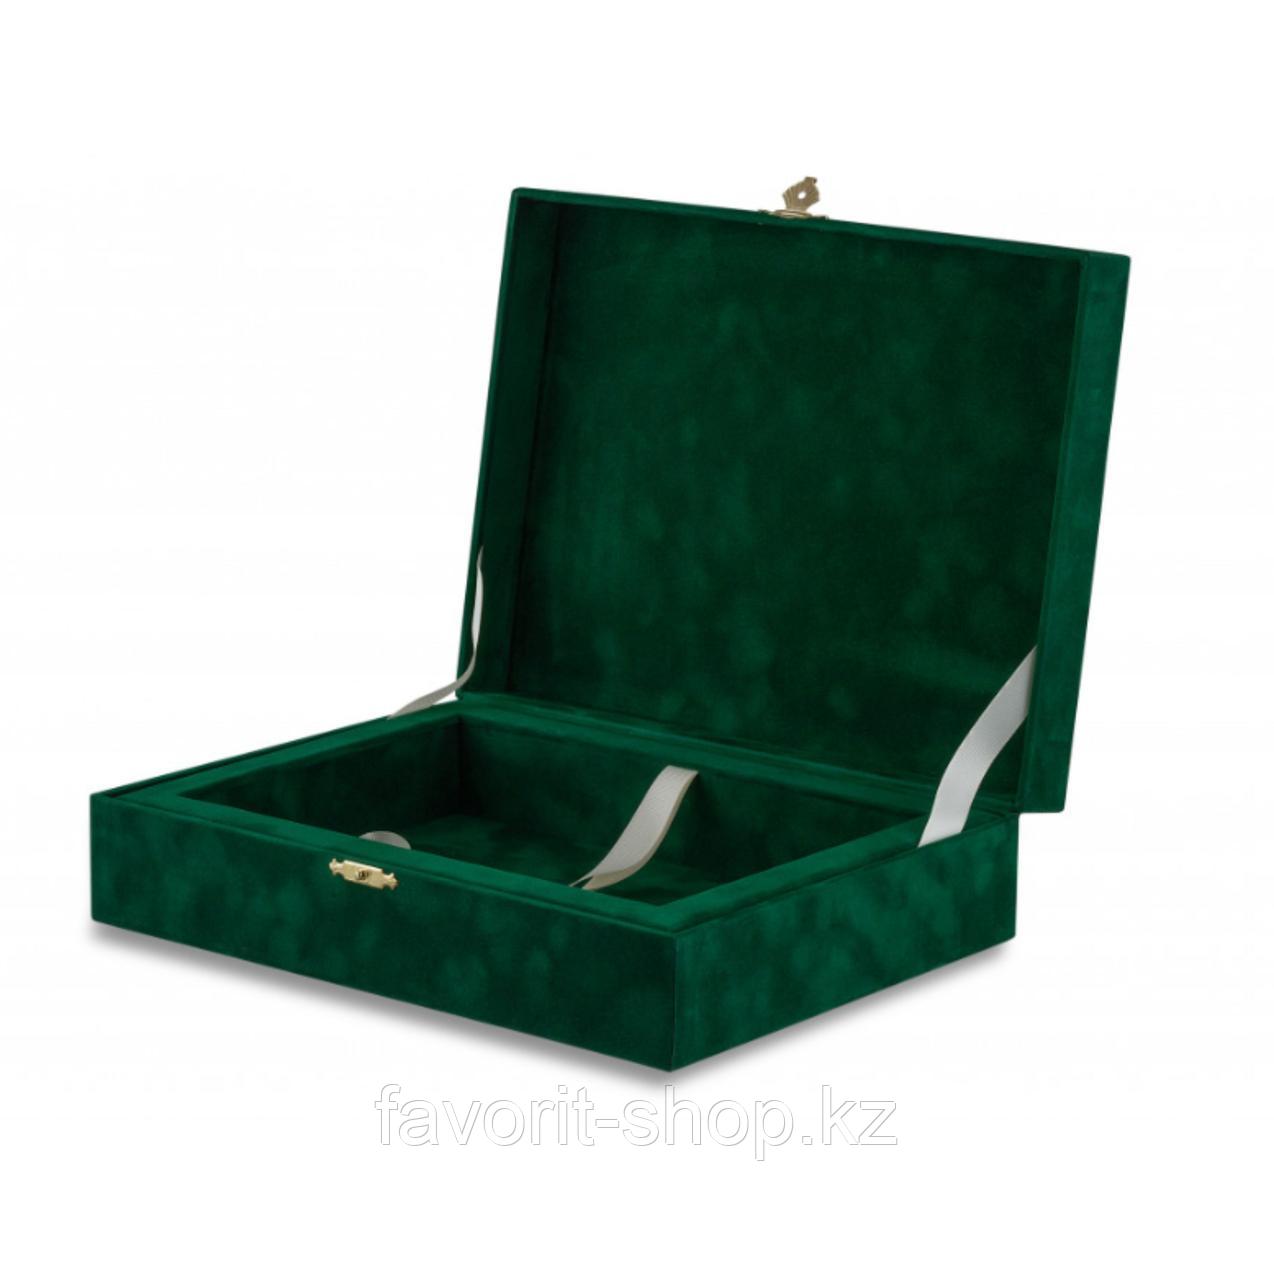 Шкатулка бархатная зелёная с замком / Изготовление подарочной упаковки на заказ